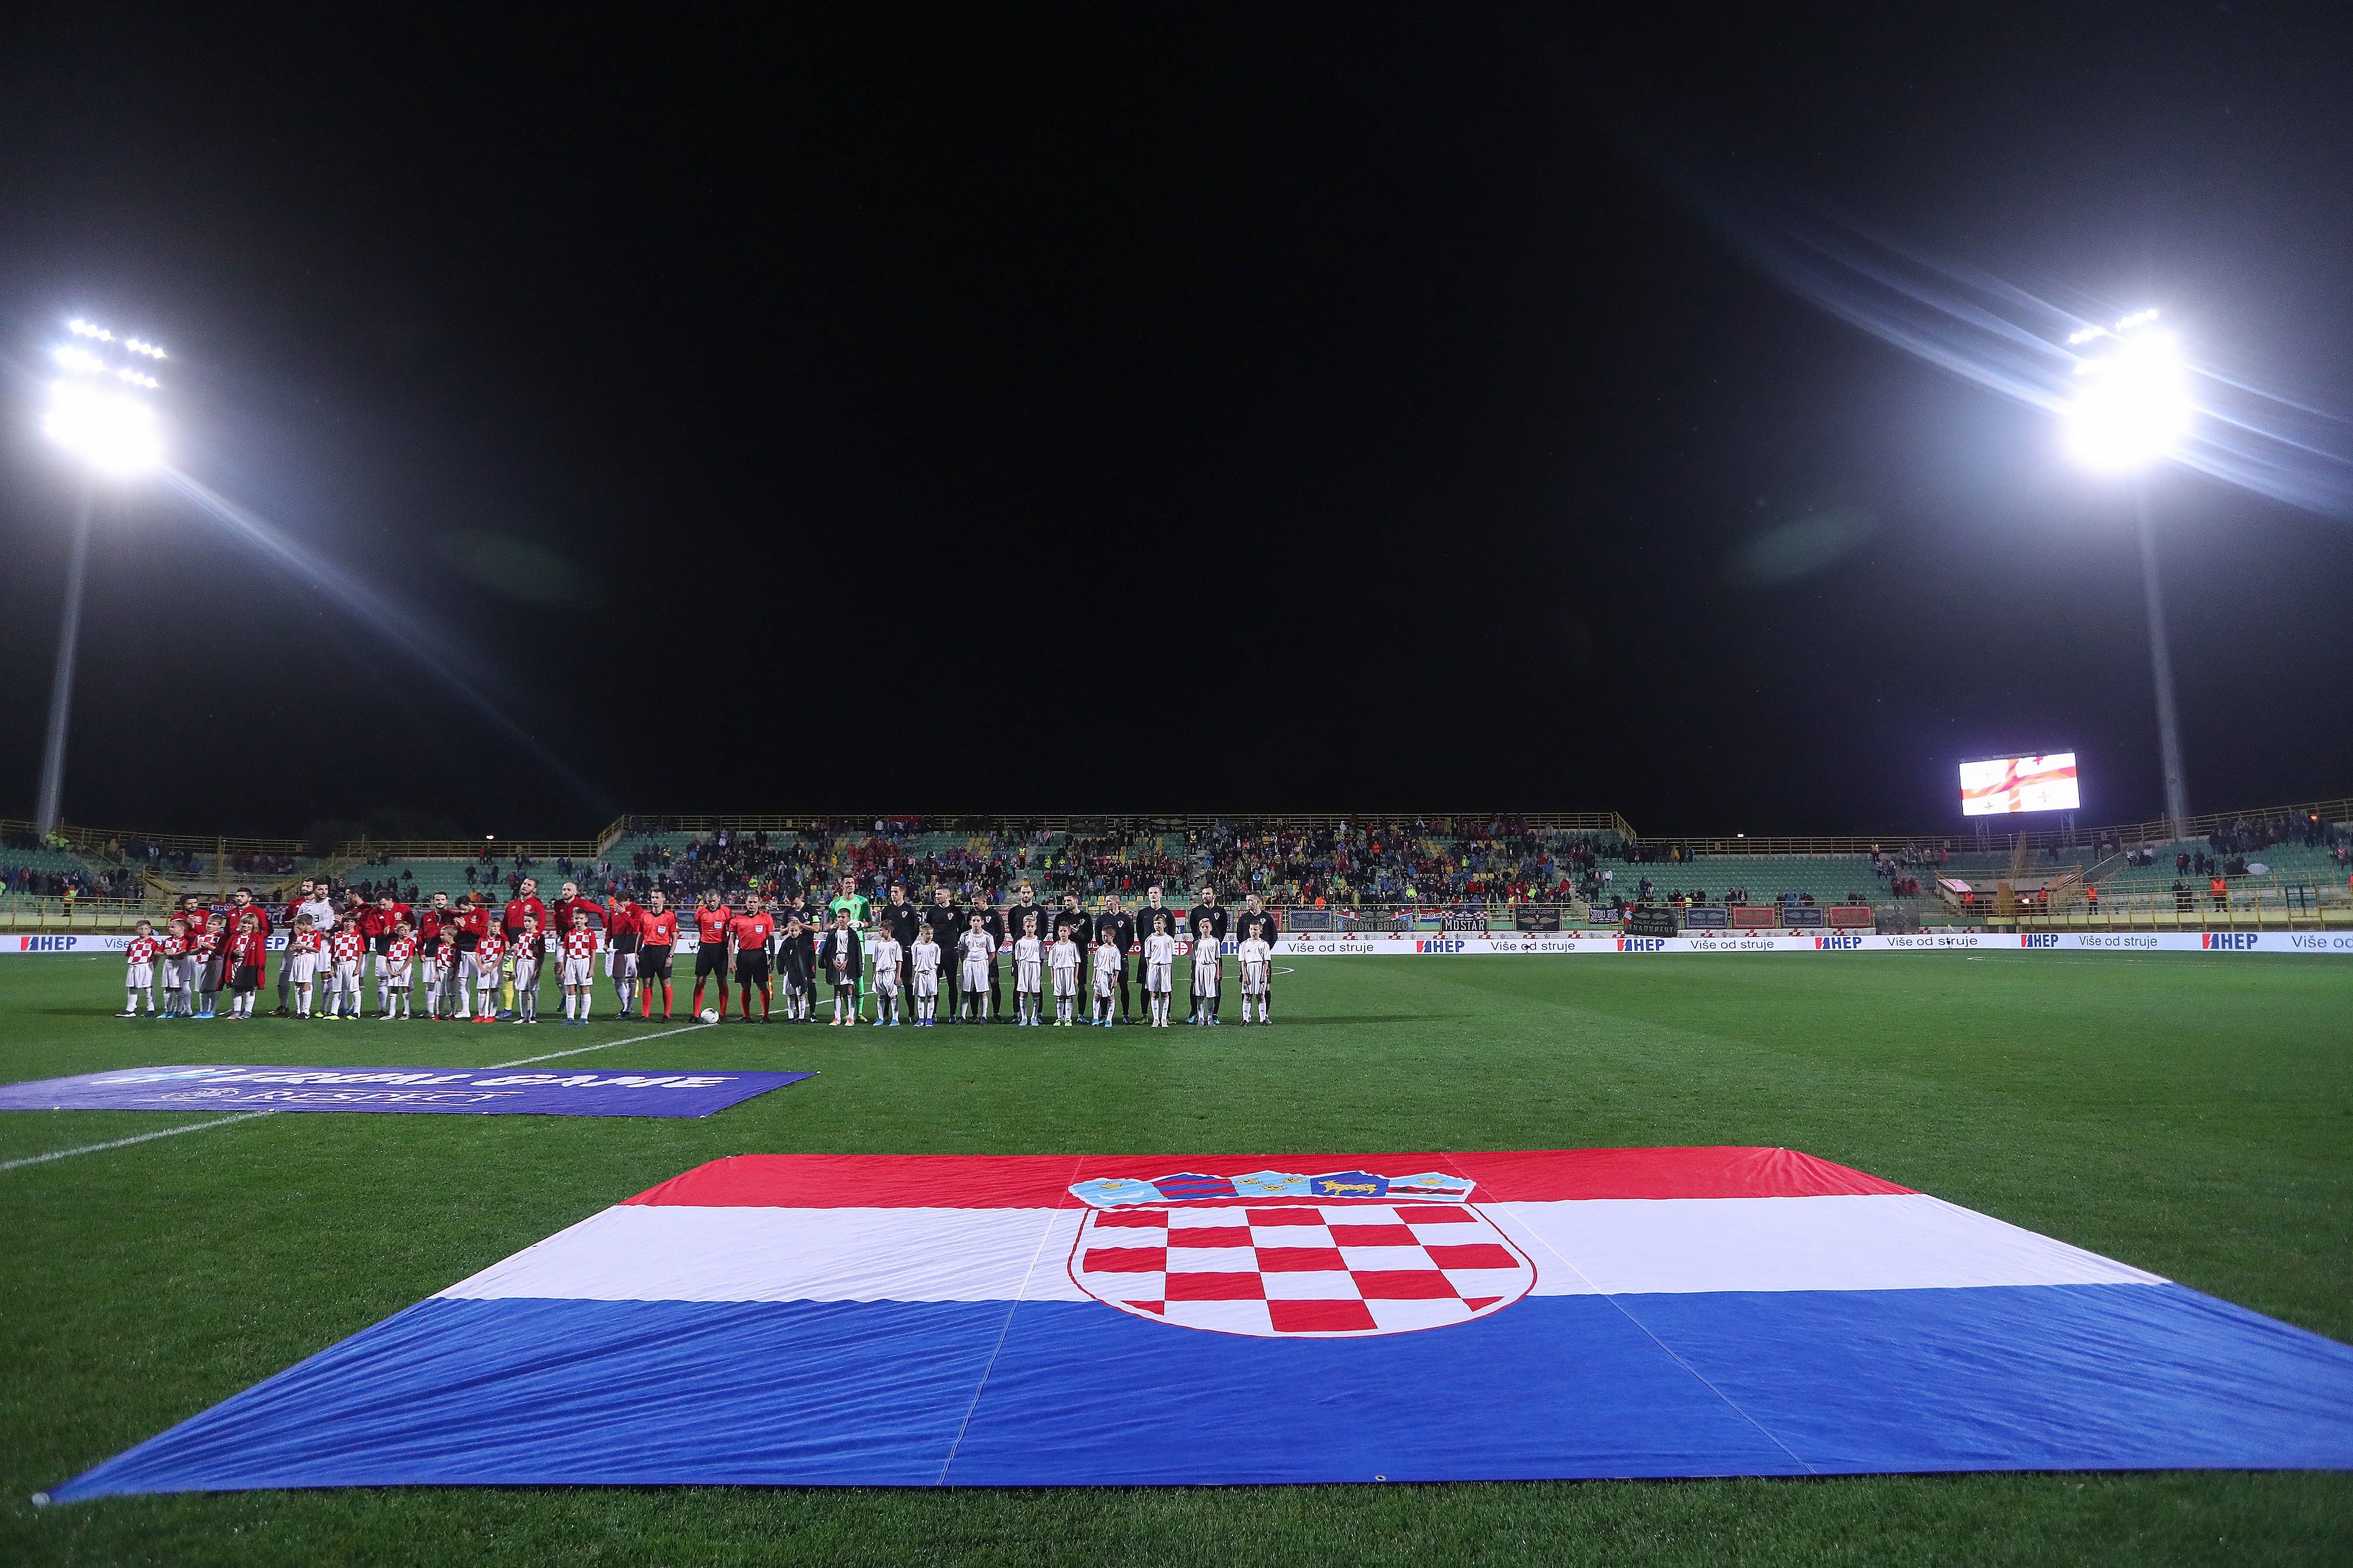 19.11.2019., Stadion Aldo Drosina, Pula - Prijateljska nogometna utakmica, Hrvatska - Gruzija. 
Photo: Luka Stanzl/PIXSELL